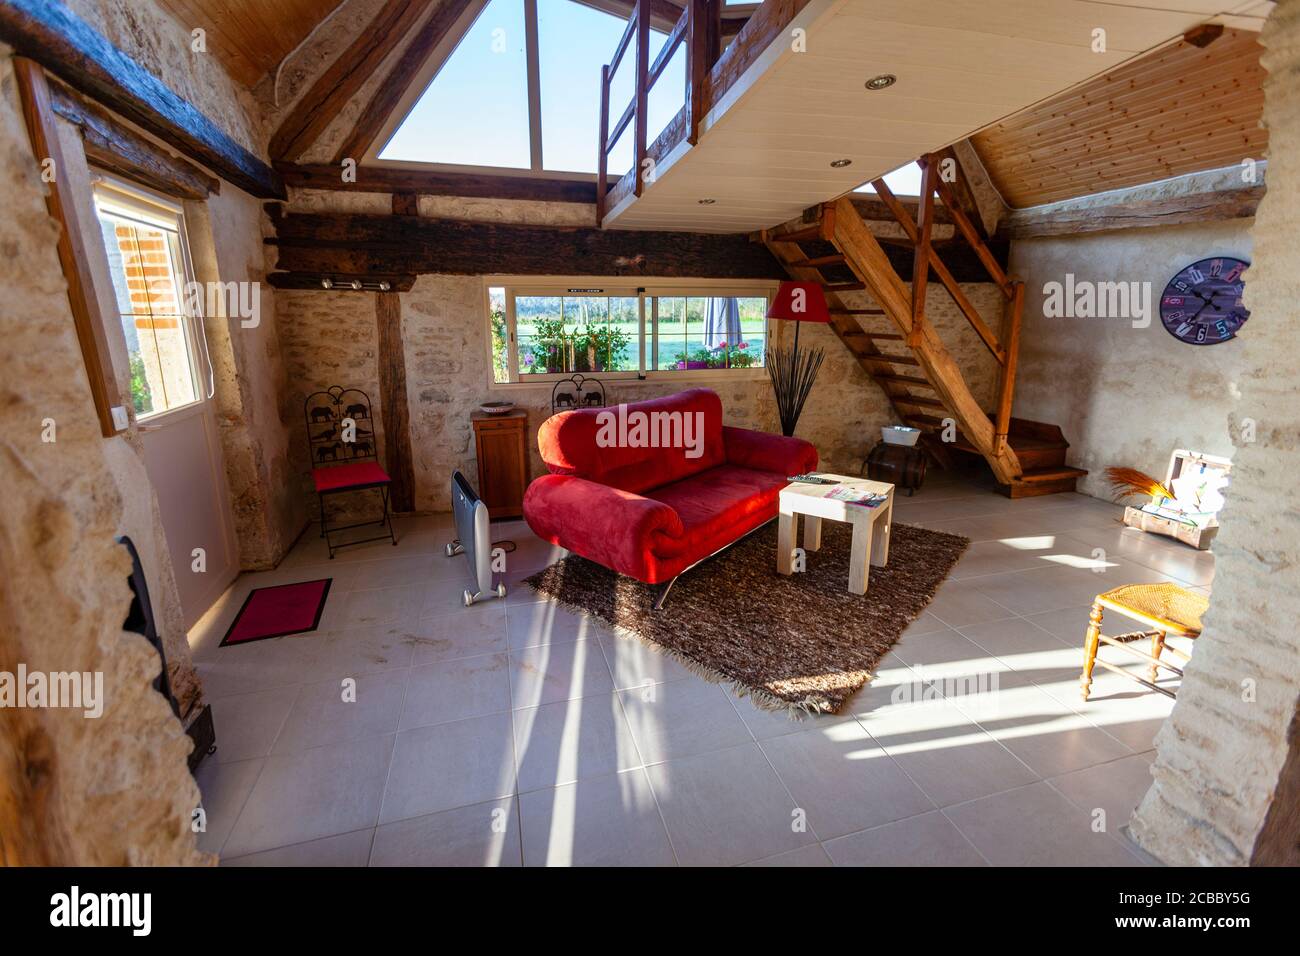 Gite, barn like type of tourist accommodation near Villeherviers, Loir-et-Cher,  France. Stock Photo